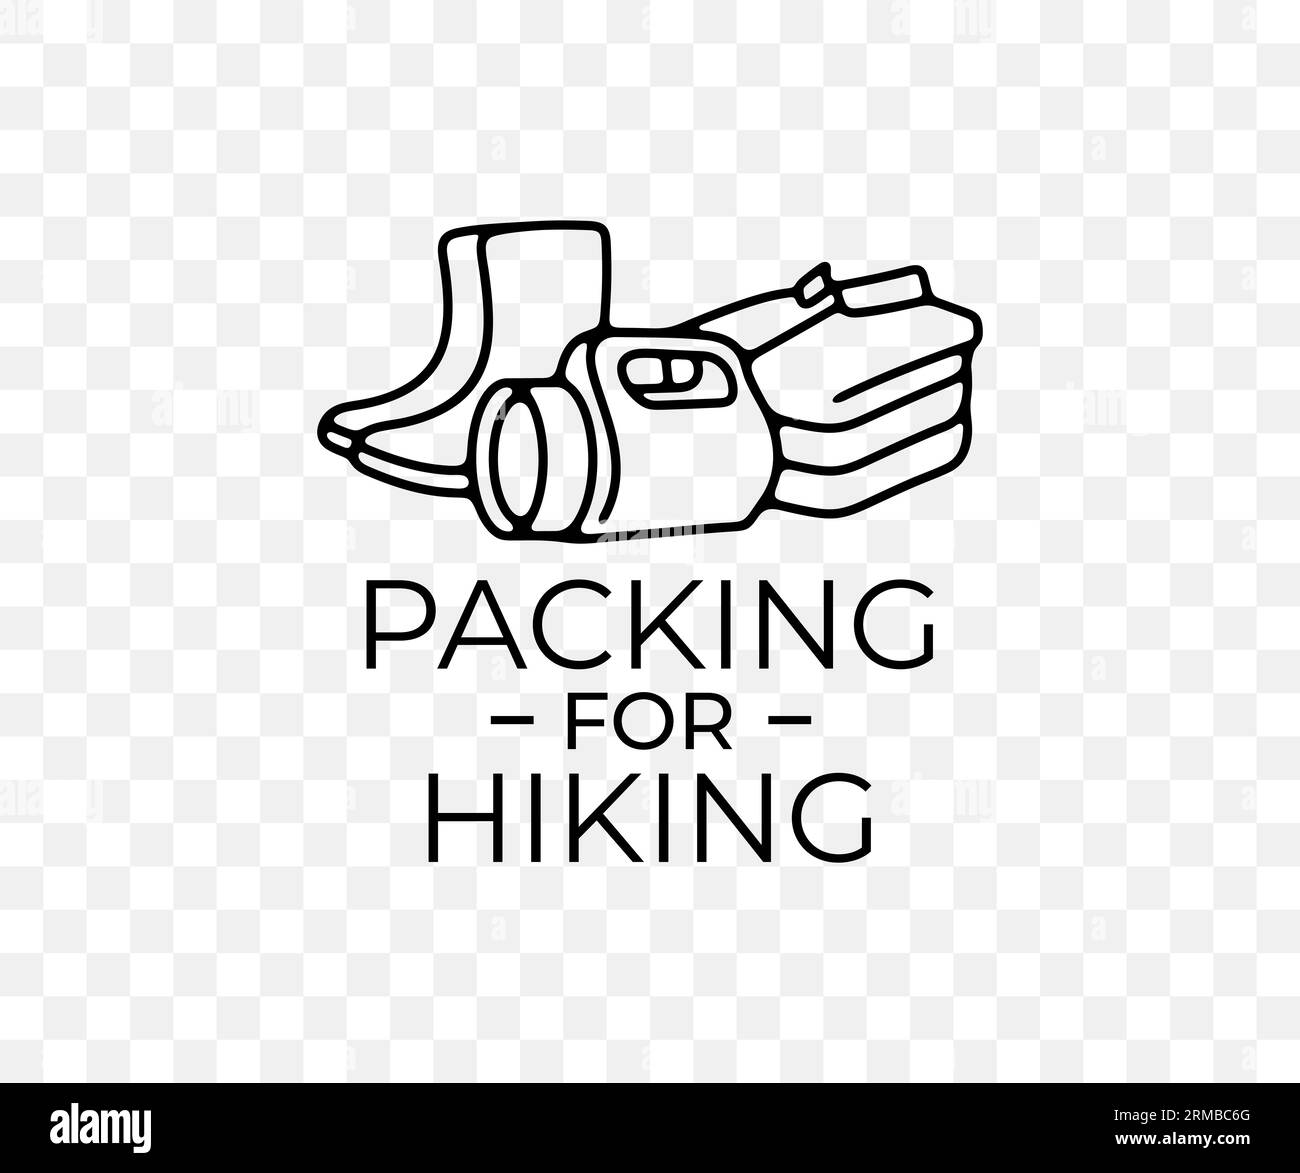 Verpackung für Wanderungen, Schuhe, Kleidung und Taschenlampe, lineares Grafikdesign. Reisen, Trekking, Camping, Reise, Abenteuer, Natur und Sport, Vektor Stock Vektor